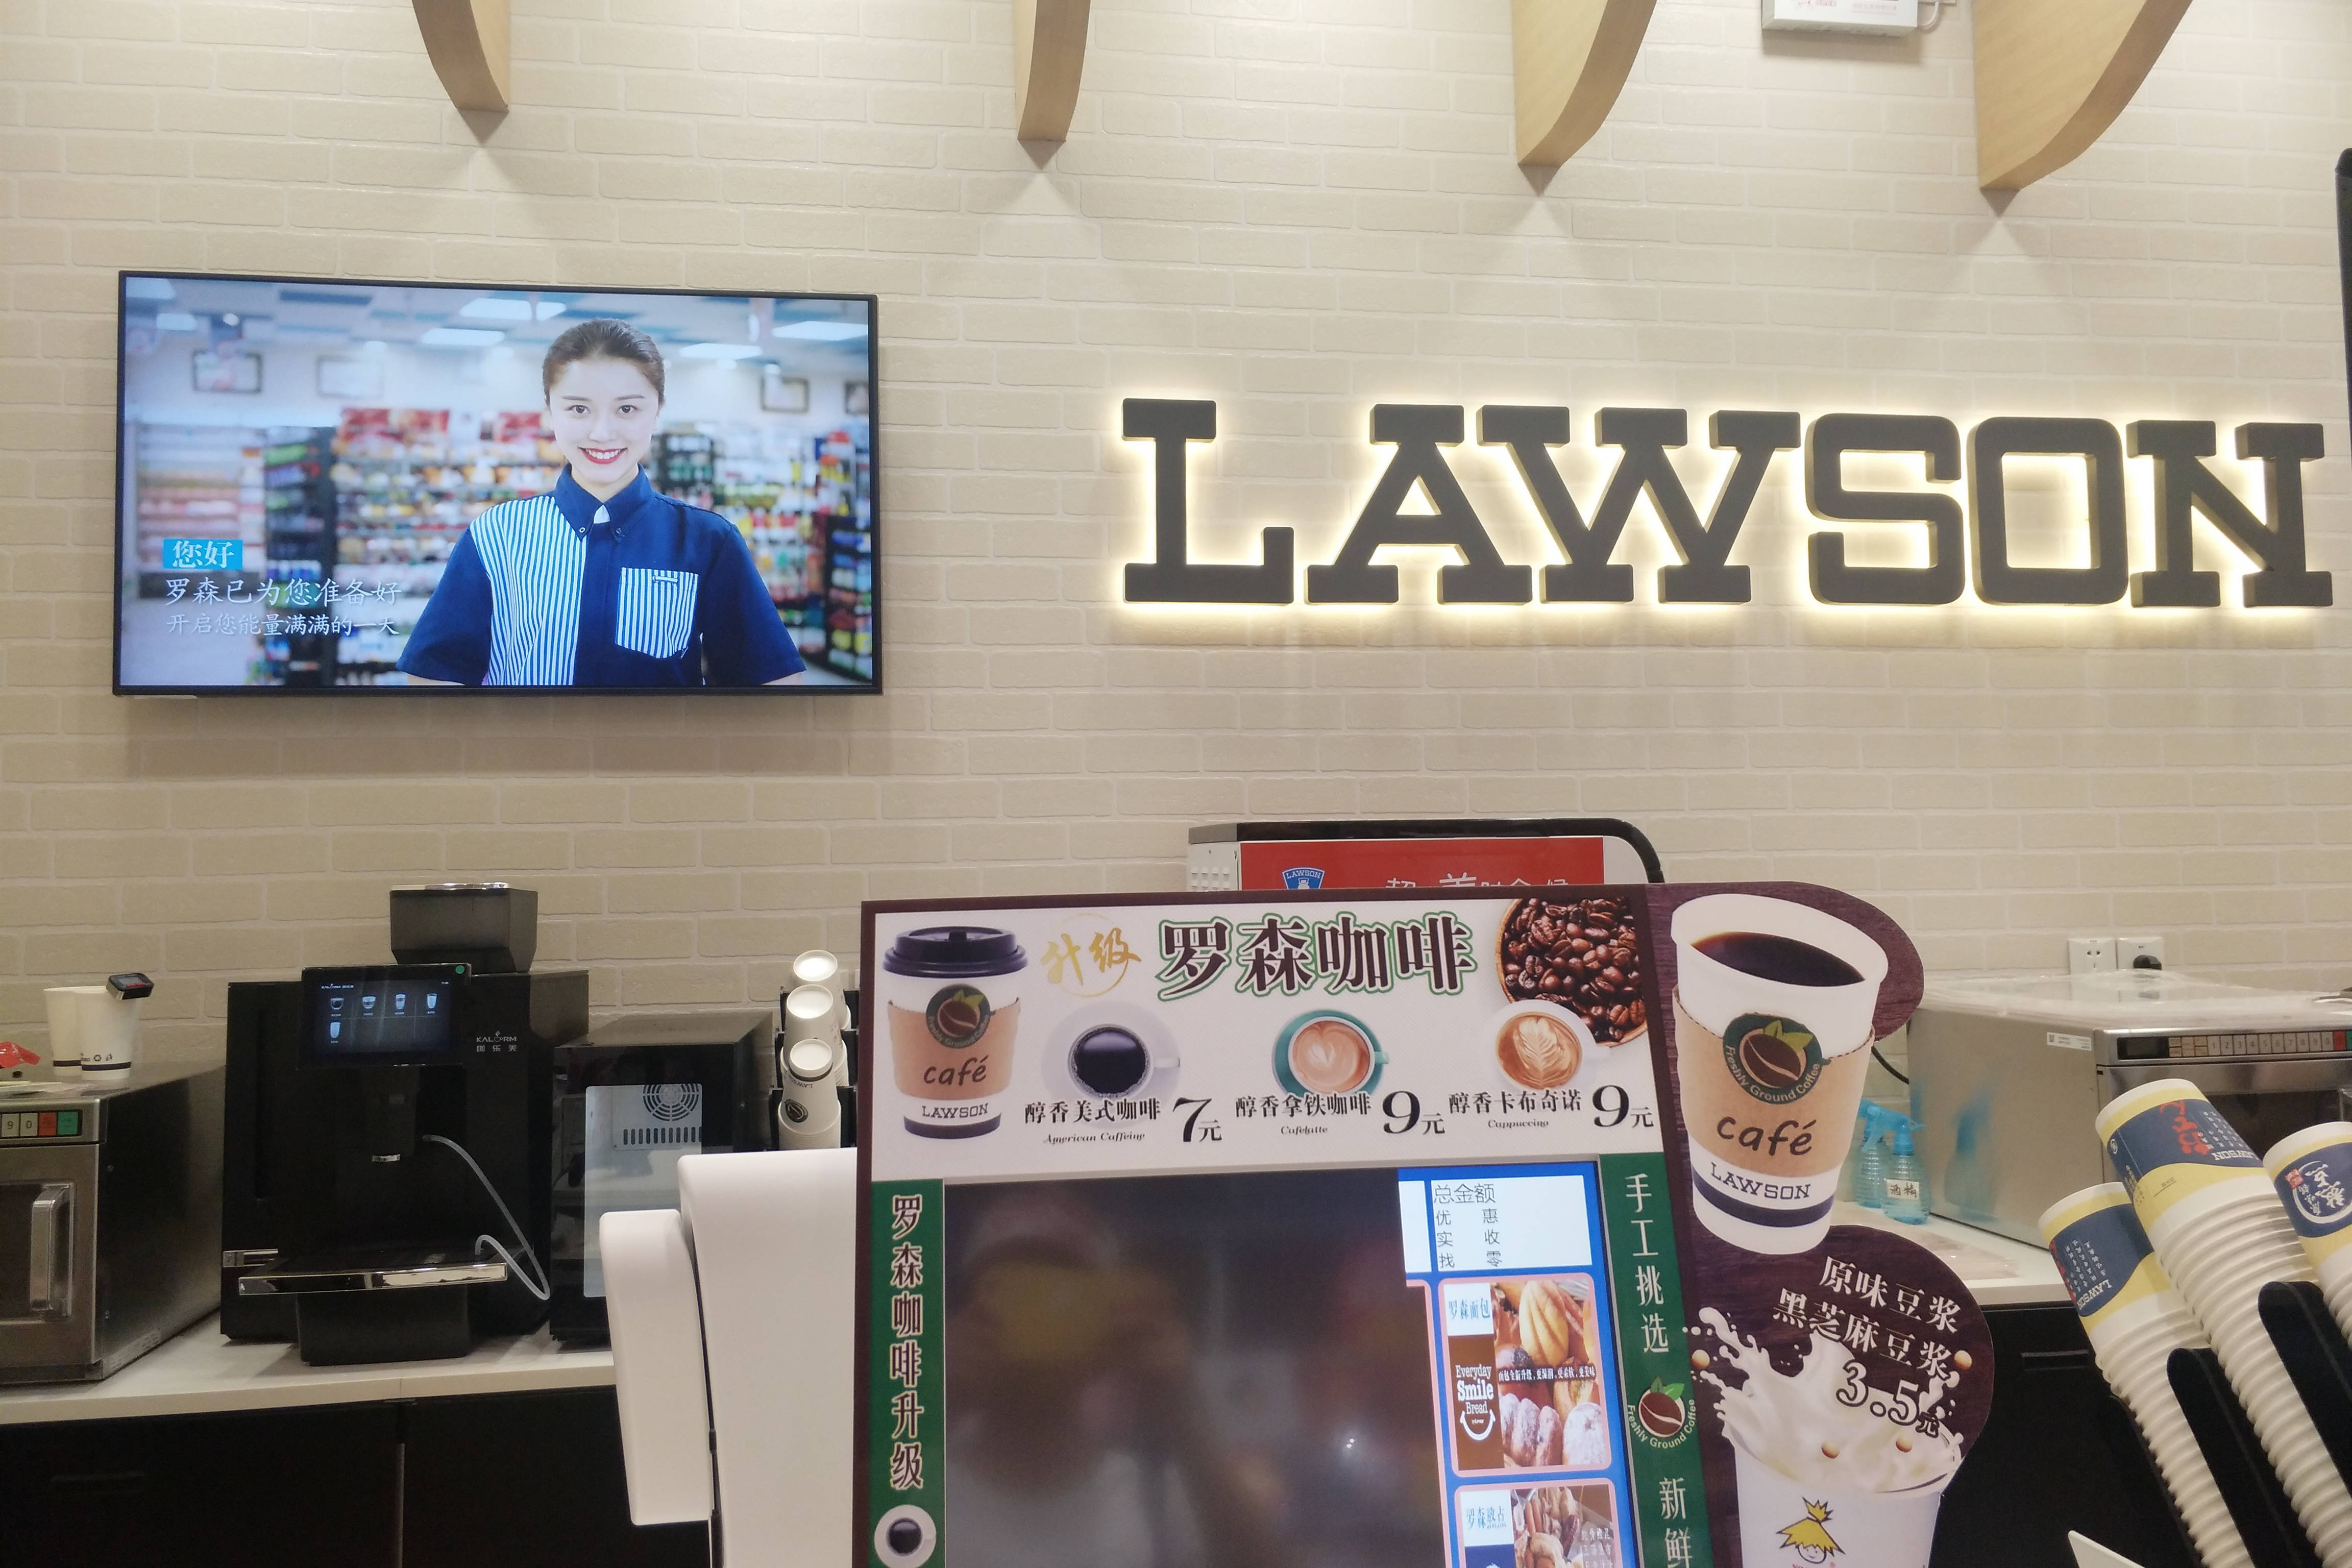 (咖乐美物联网咖啡机&罗森便利店)咖乐美,专注商用全自动咖啡机,产品